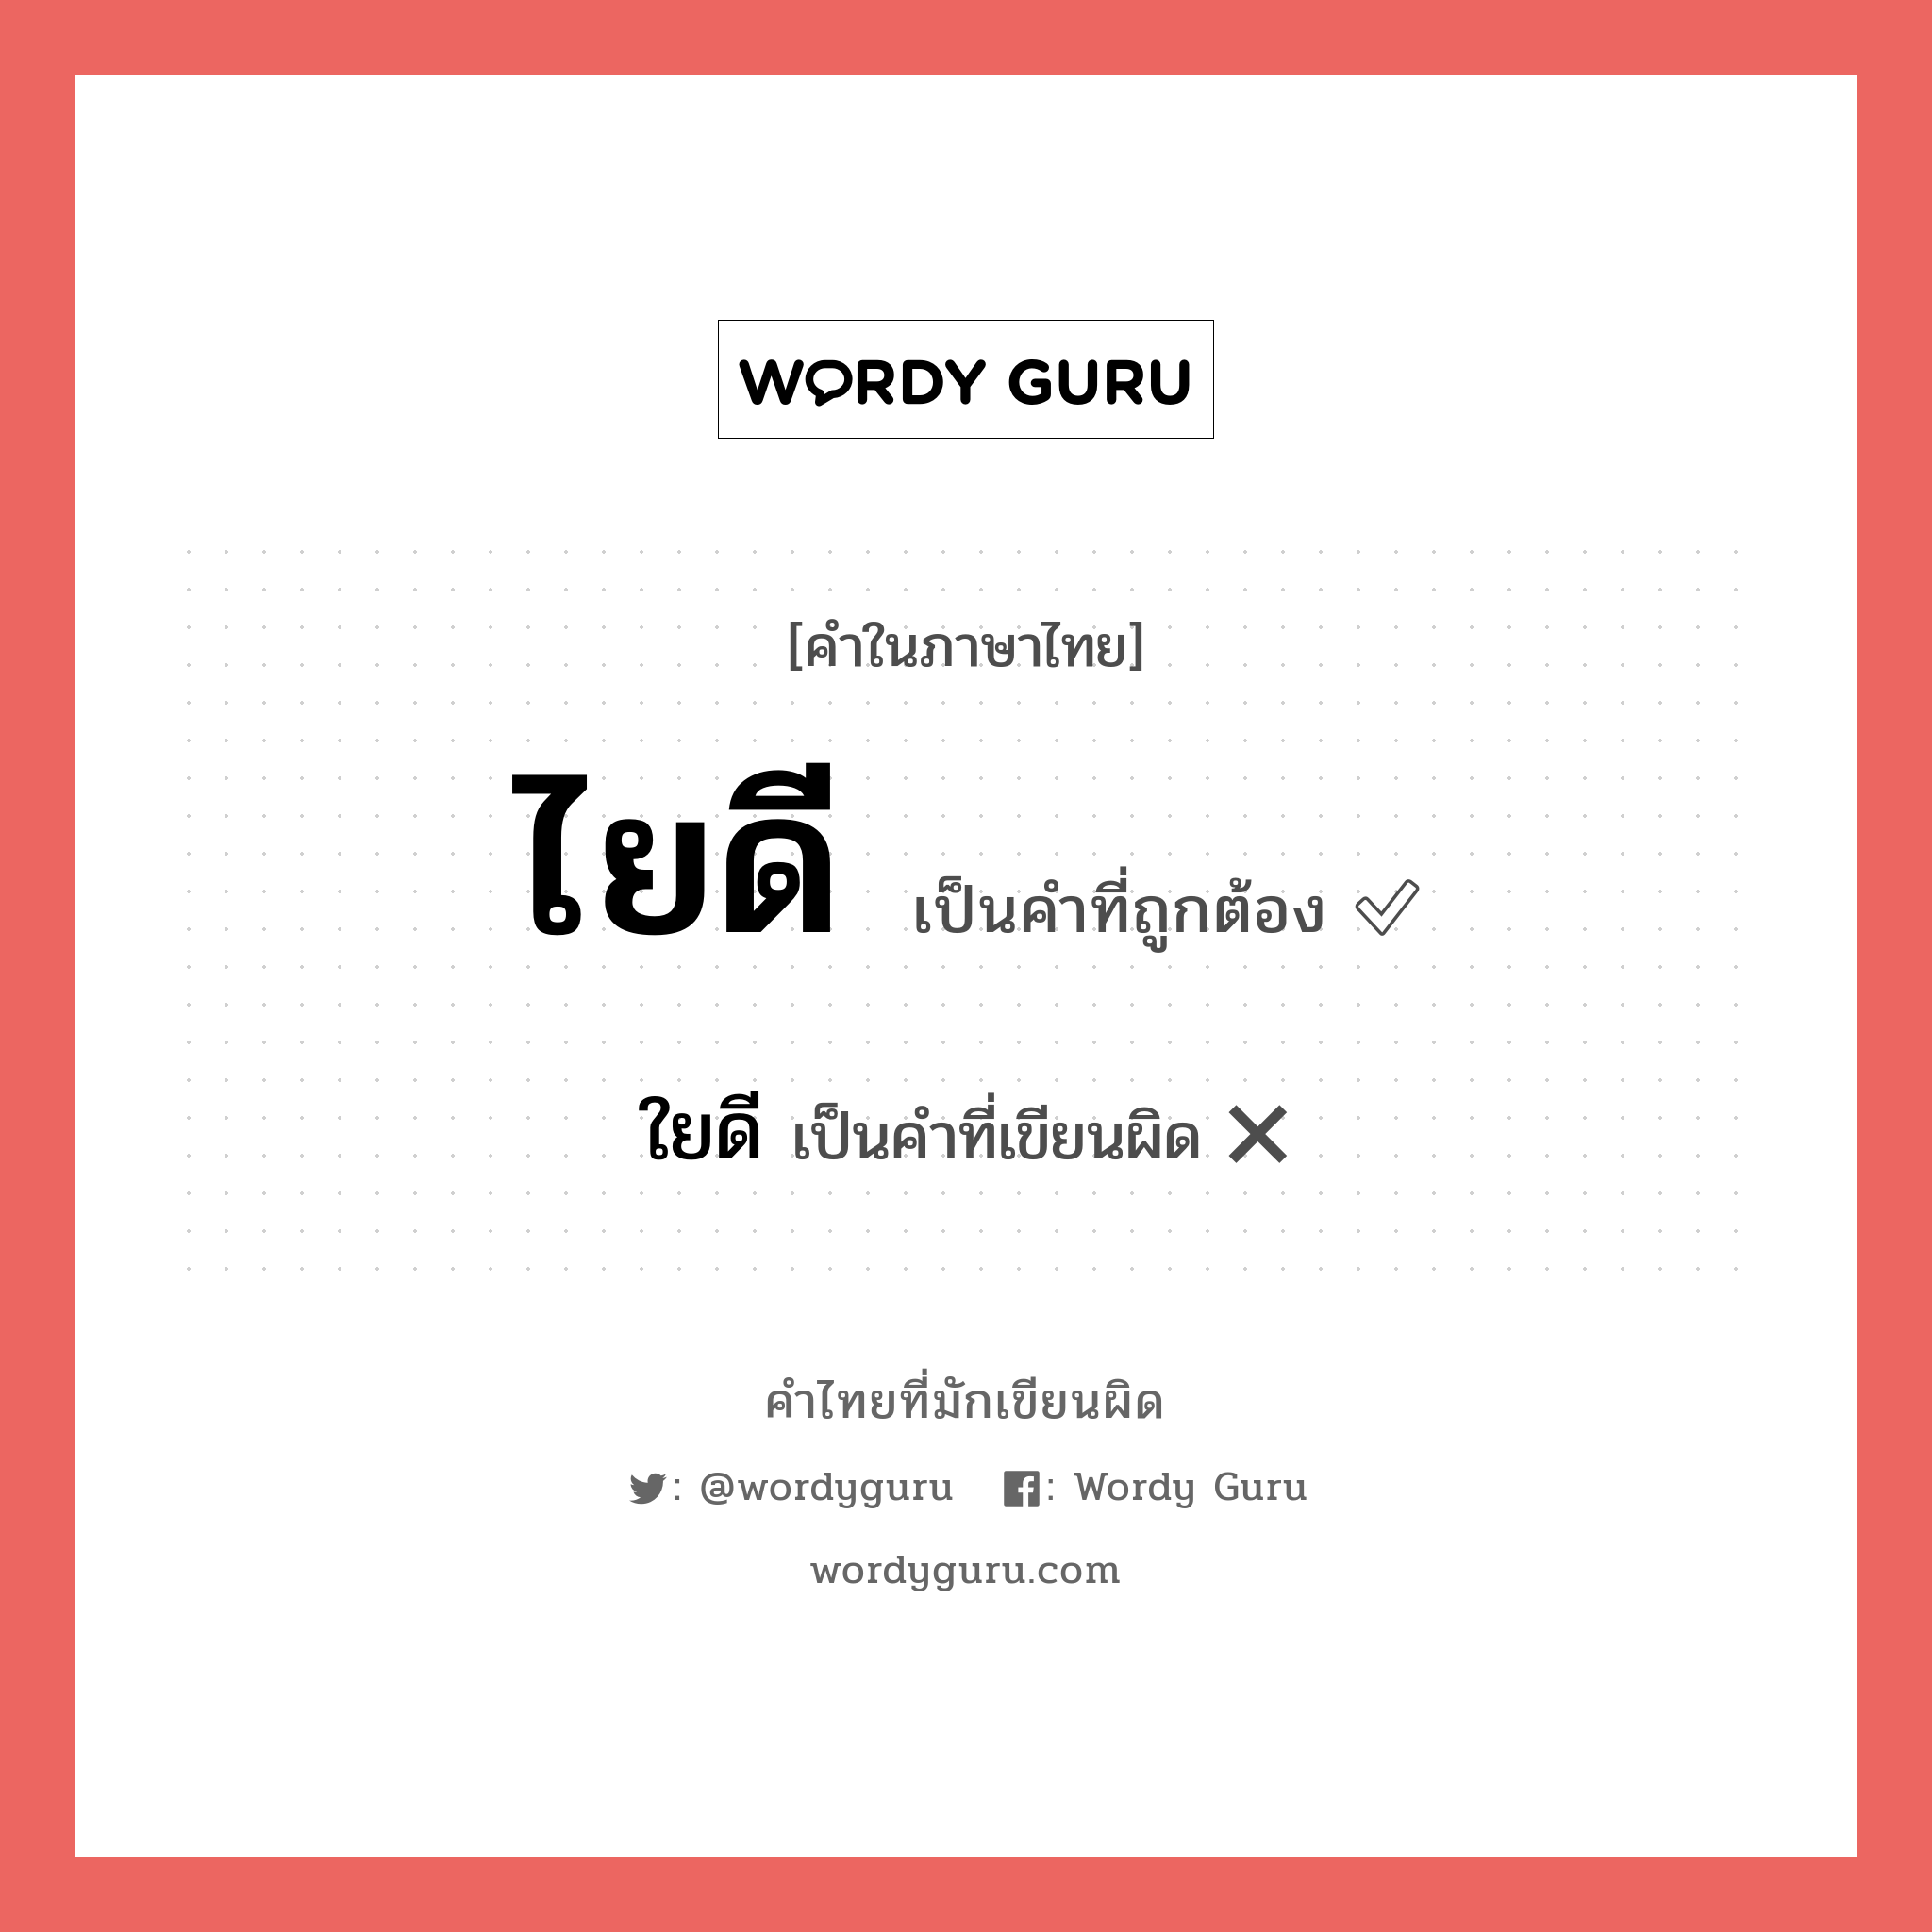 ไยดี หรือ ใยดี คำไหนเขียนถูก?, คำในภาษาไทยที่มักเขียนผิด ไยดี คำที่ผิด ❌ ใยดี